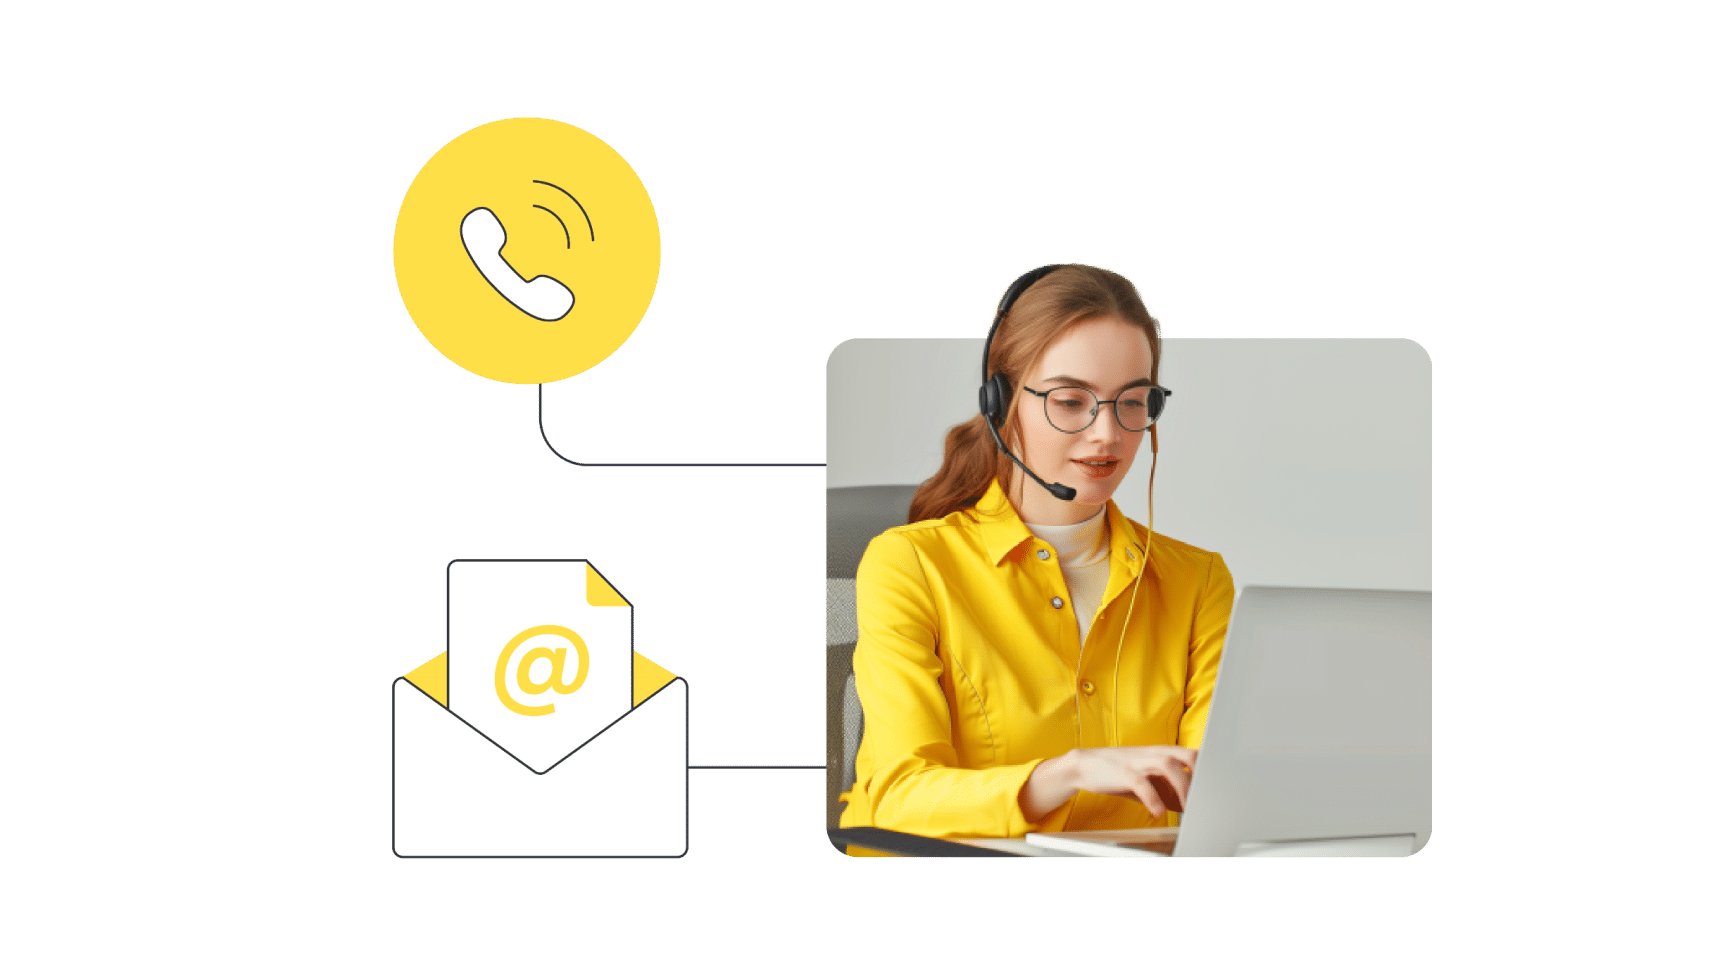 Helpdesk-Mitarbeiterin mit Icons von einer Hotline und E-Mail